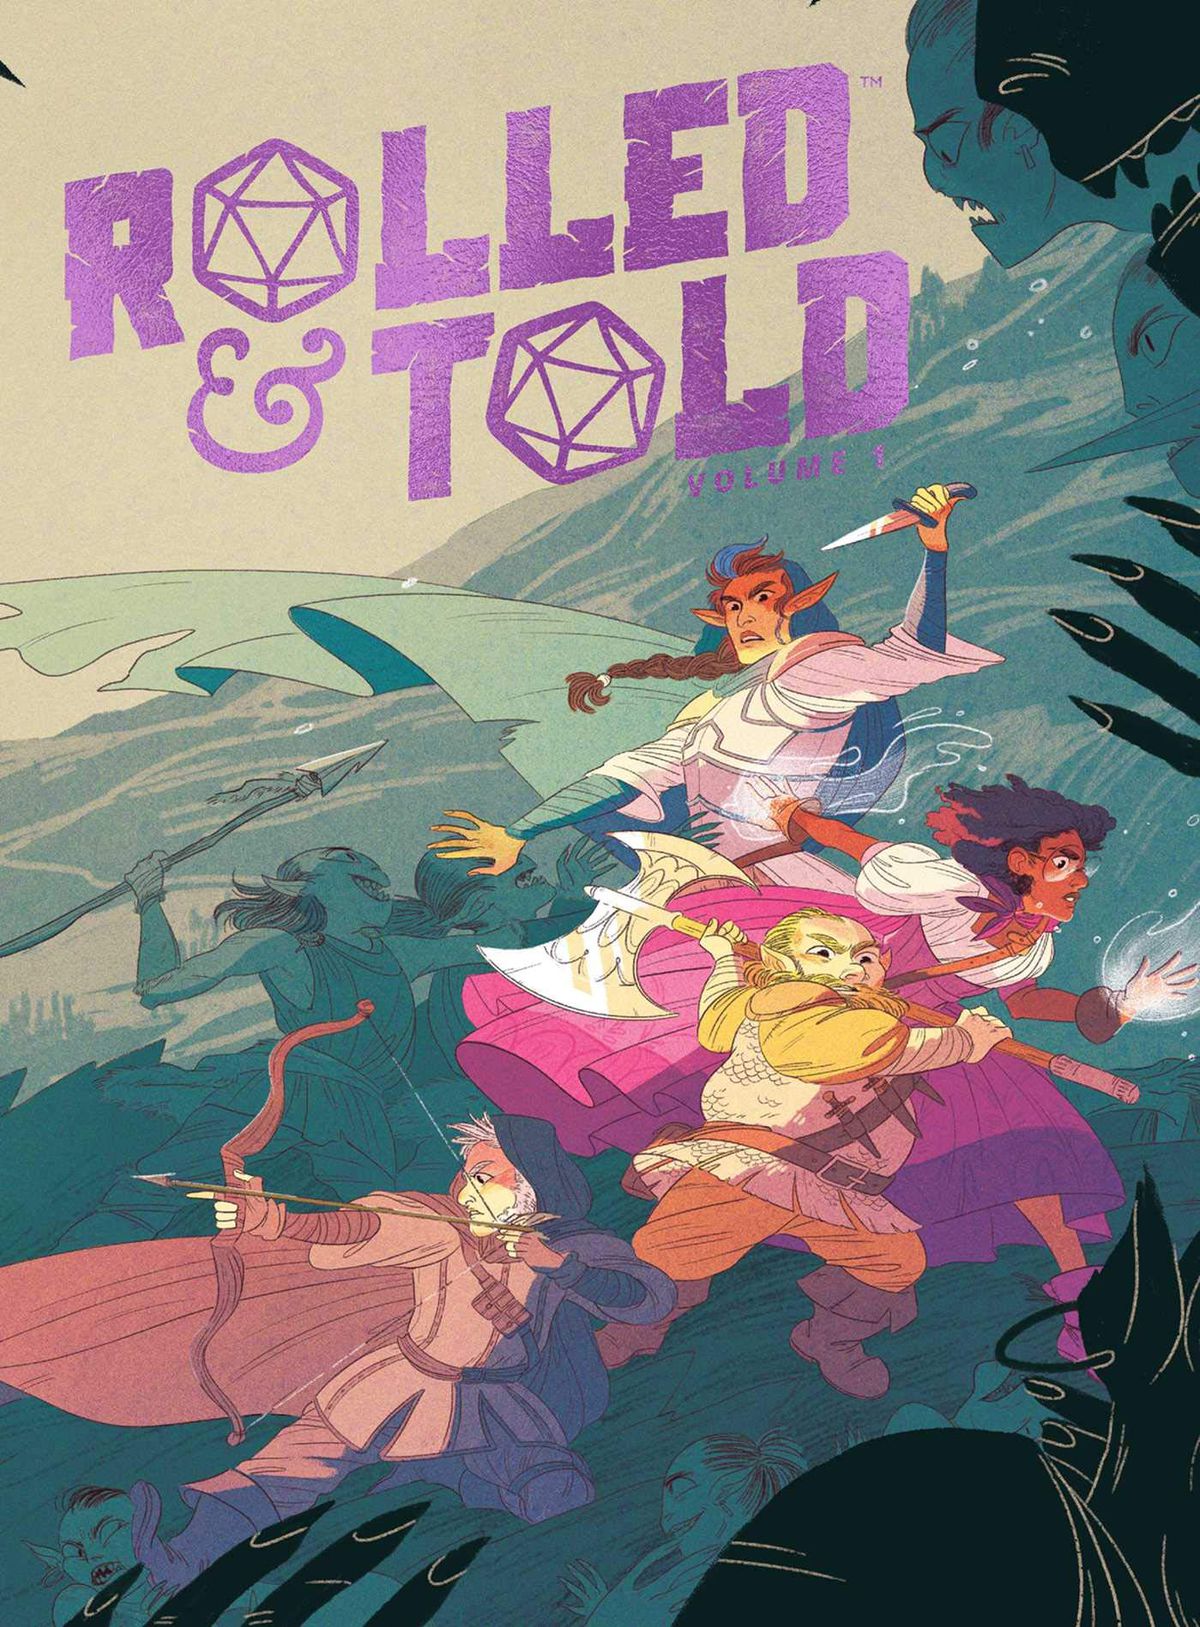 La copertina di Rolled & Told Volume 1 mostra un gruppo di eroi resi con i pastelli.